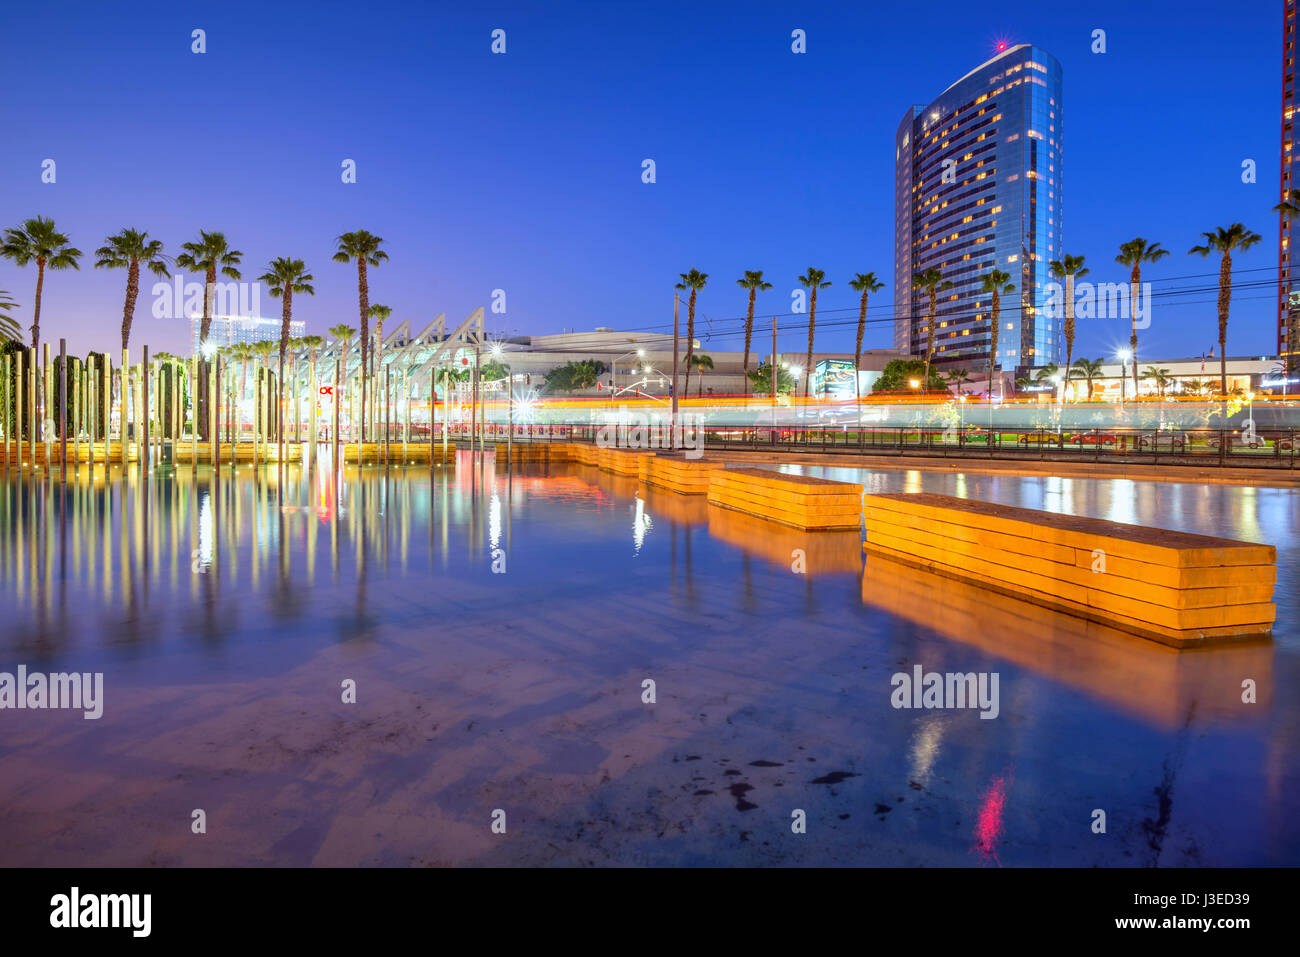 Die Innenstadt von San Diego in der Nacht, Stadtbild. San Diego, Kalifornien, USA. Stockfoto